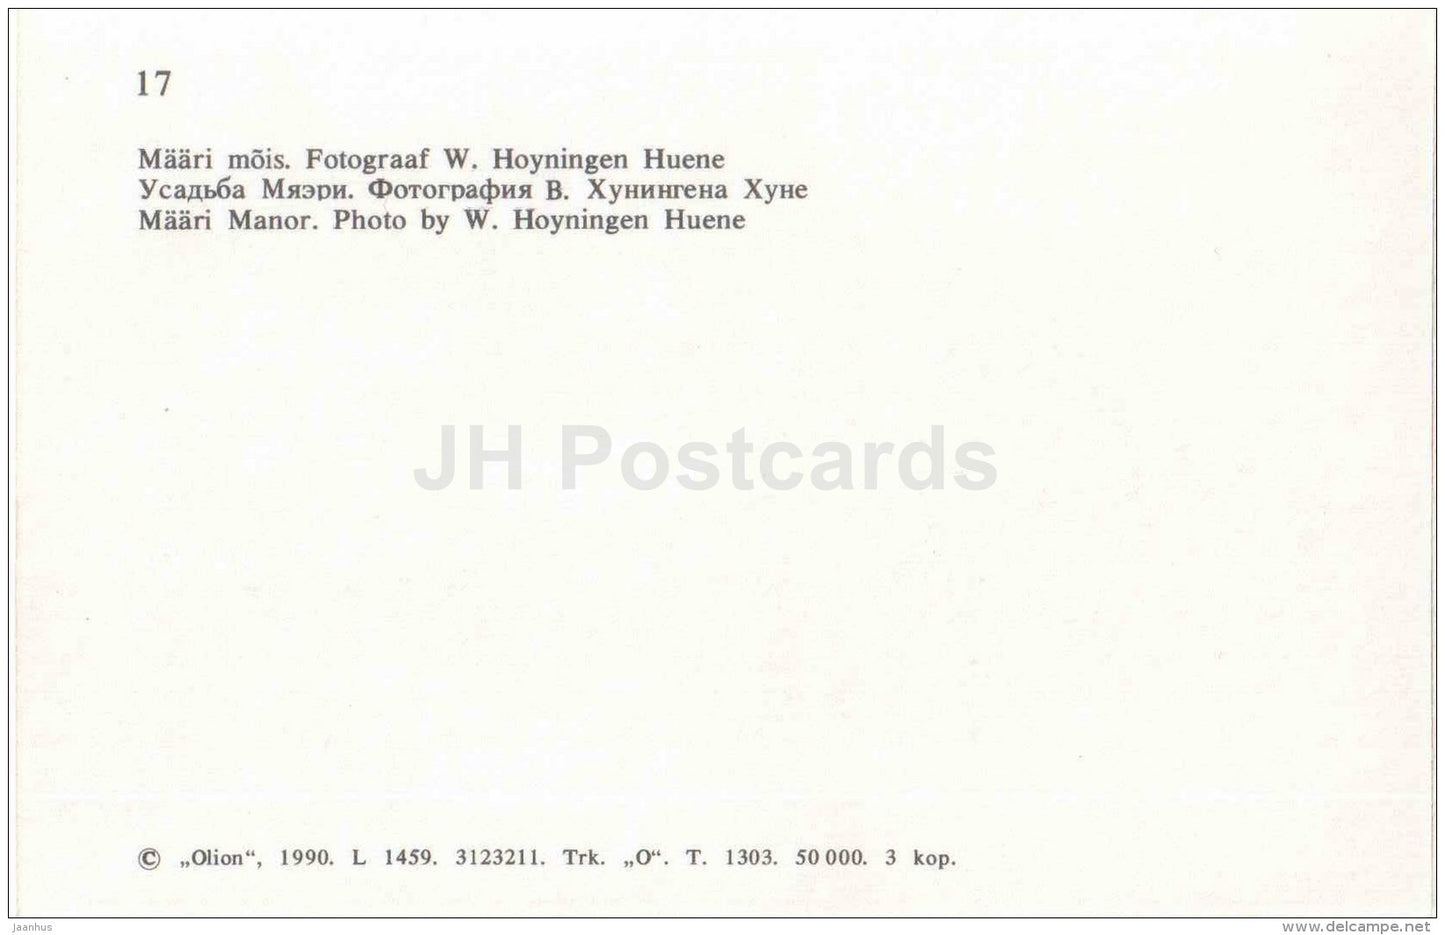 Maari Manor - Meyris - Virumaa - old postcard REPRODUCTION!!! - 1990 - Estonia USSR - unused - JH Postcards